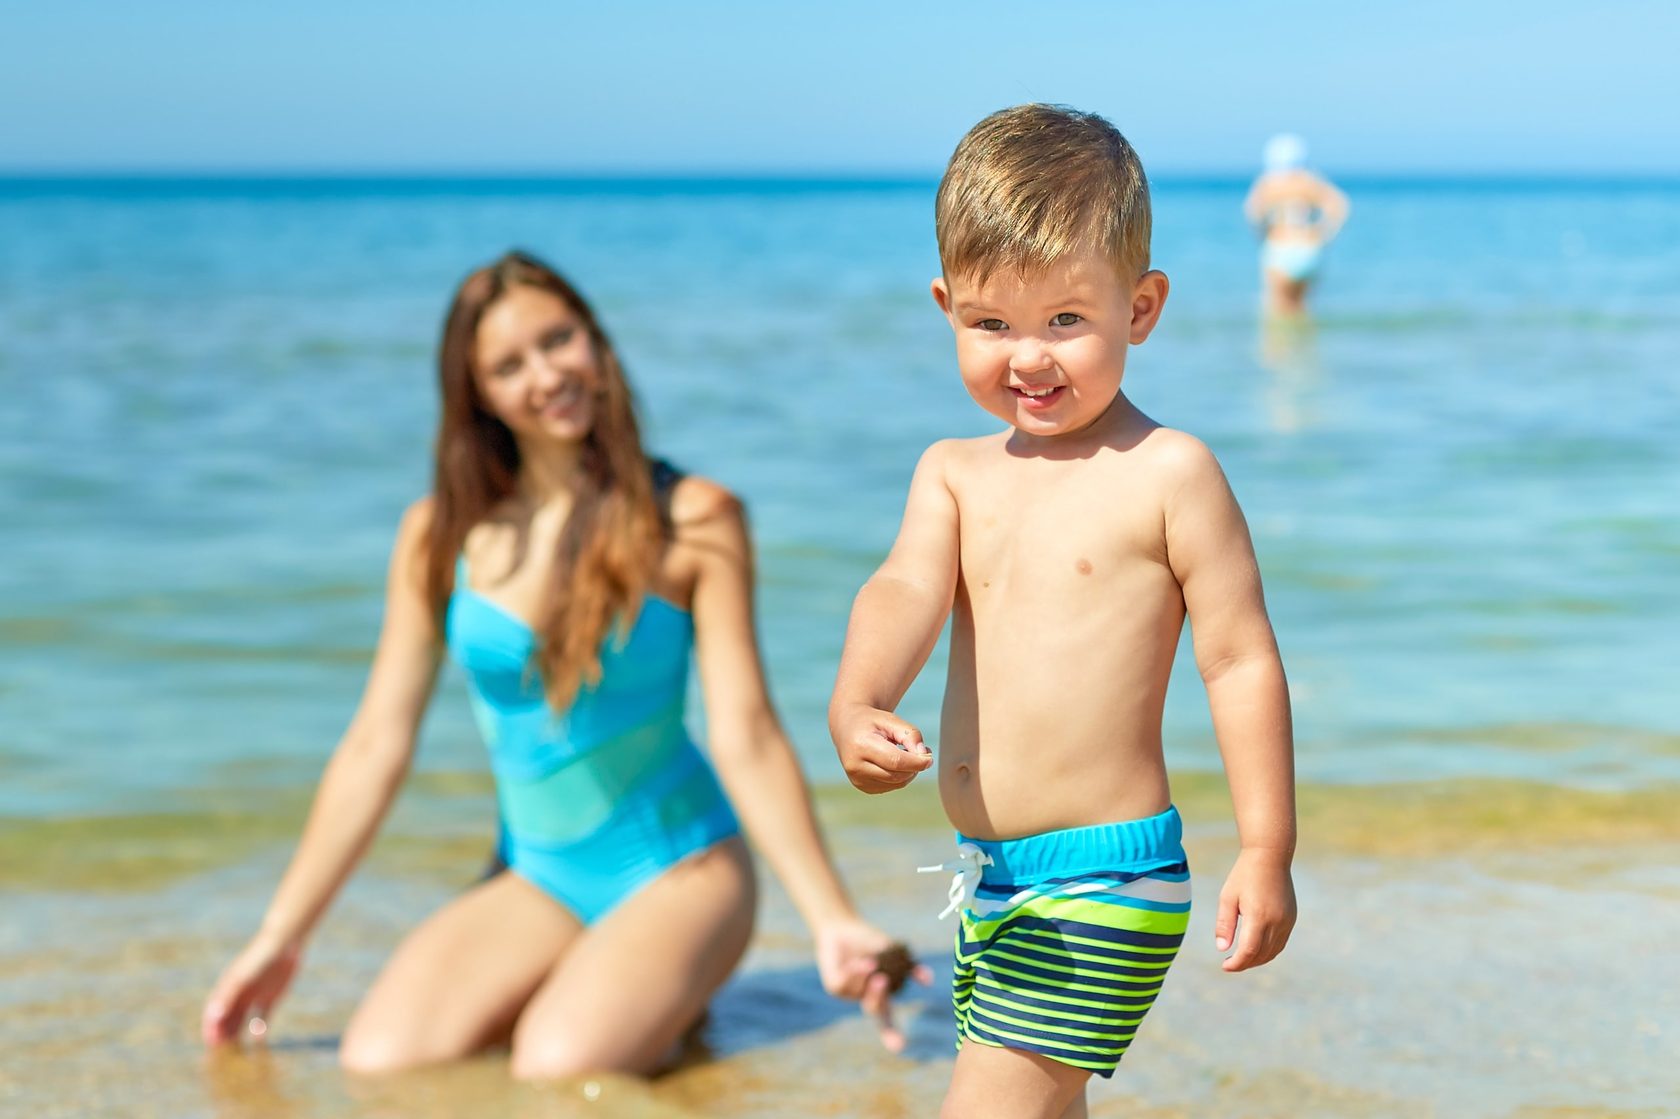 нудистский пляж с голыми детьми фото 27